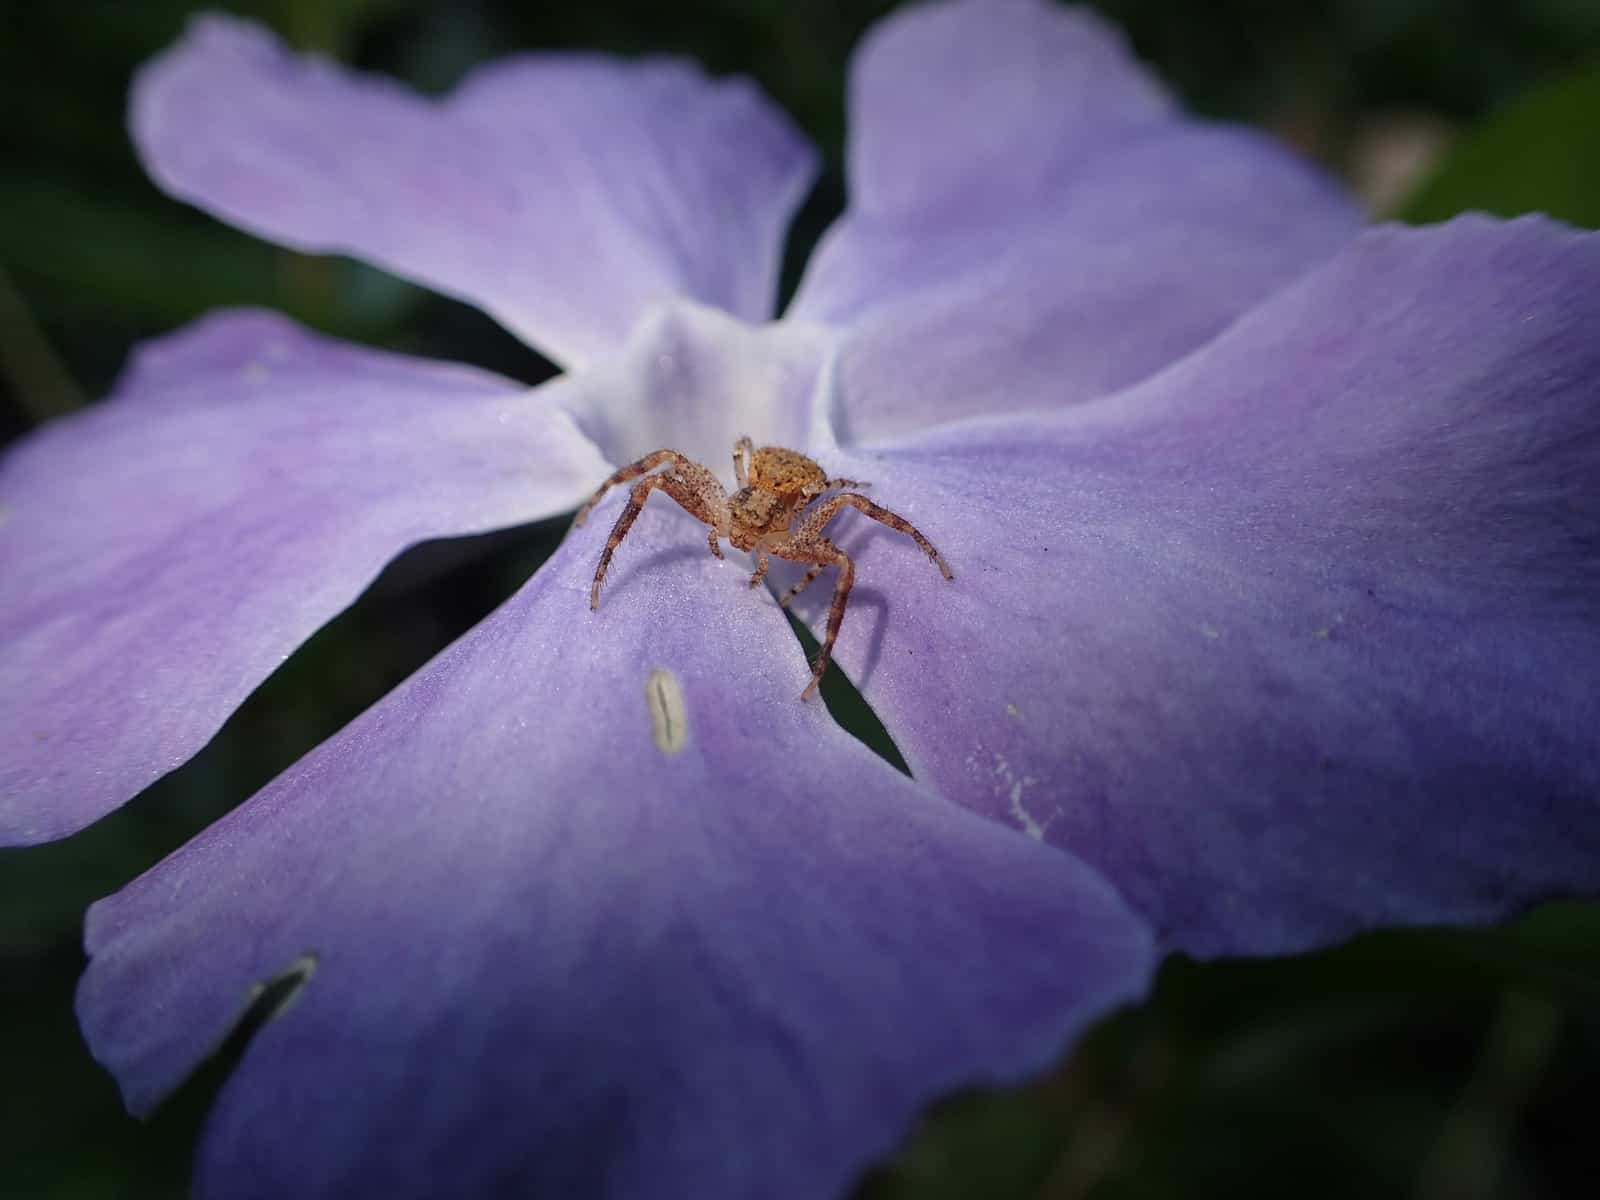 Brown Crab Spider in purple flower